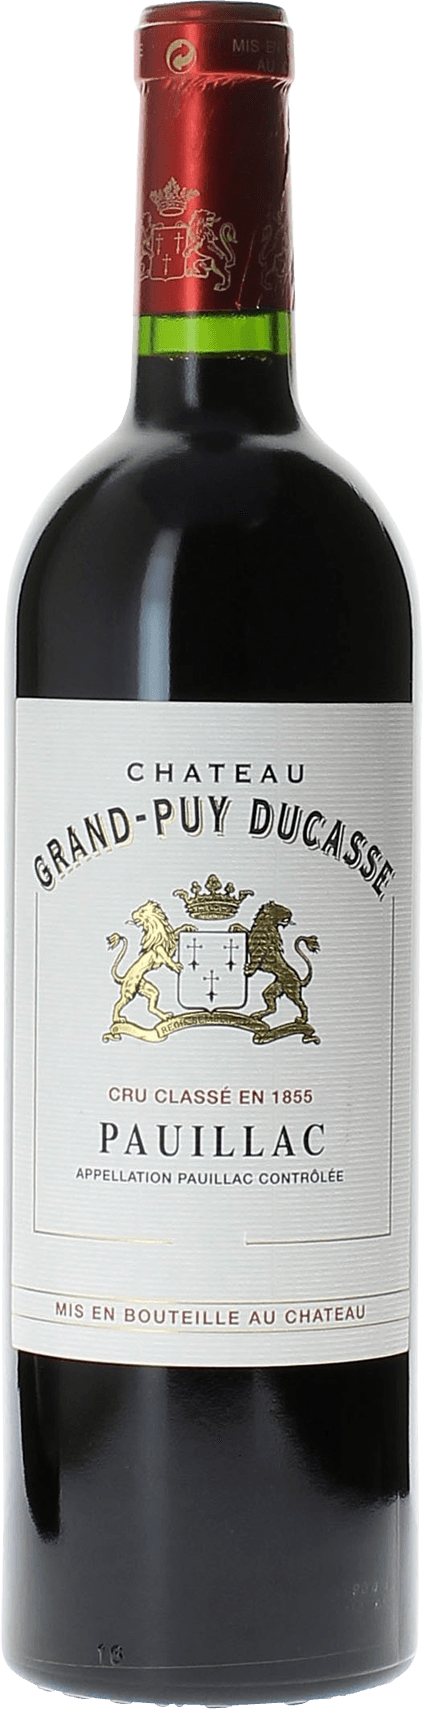 Grand puy ducasse 2006 5 me Grand cru class Pauillac, Bordeaux rouge